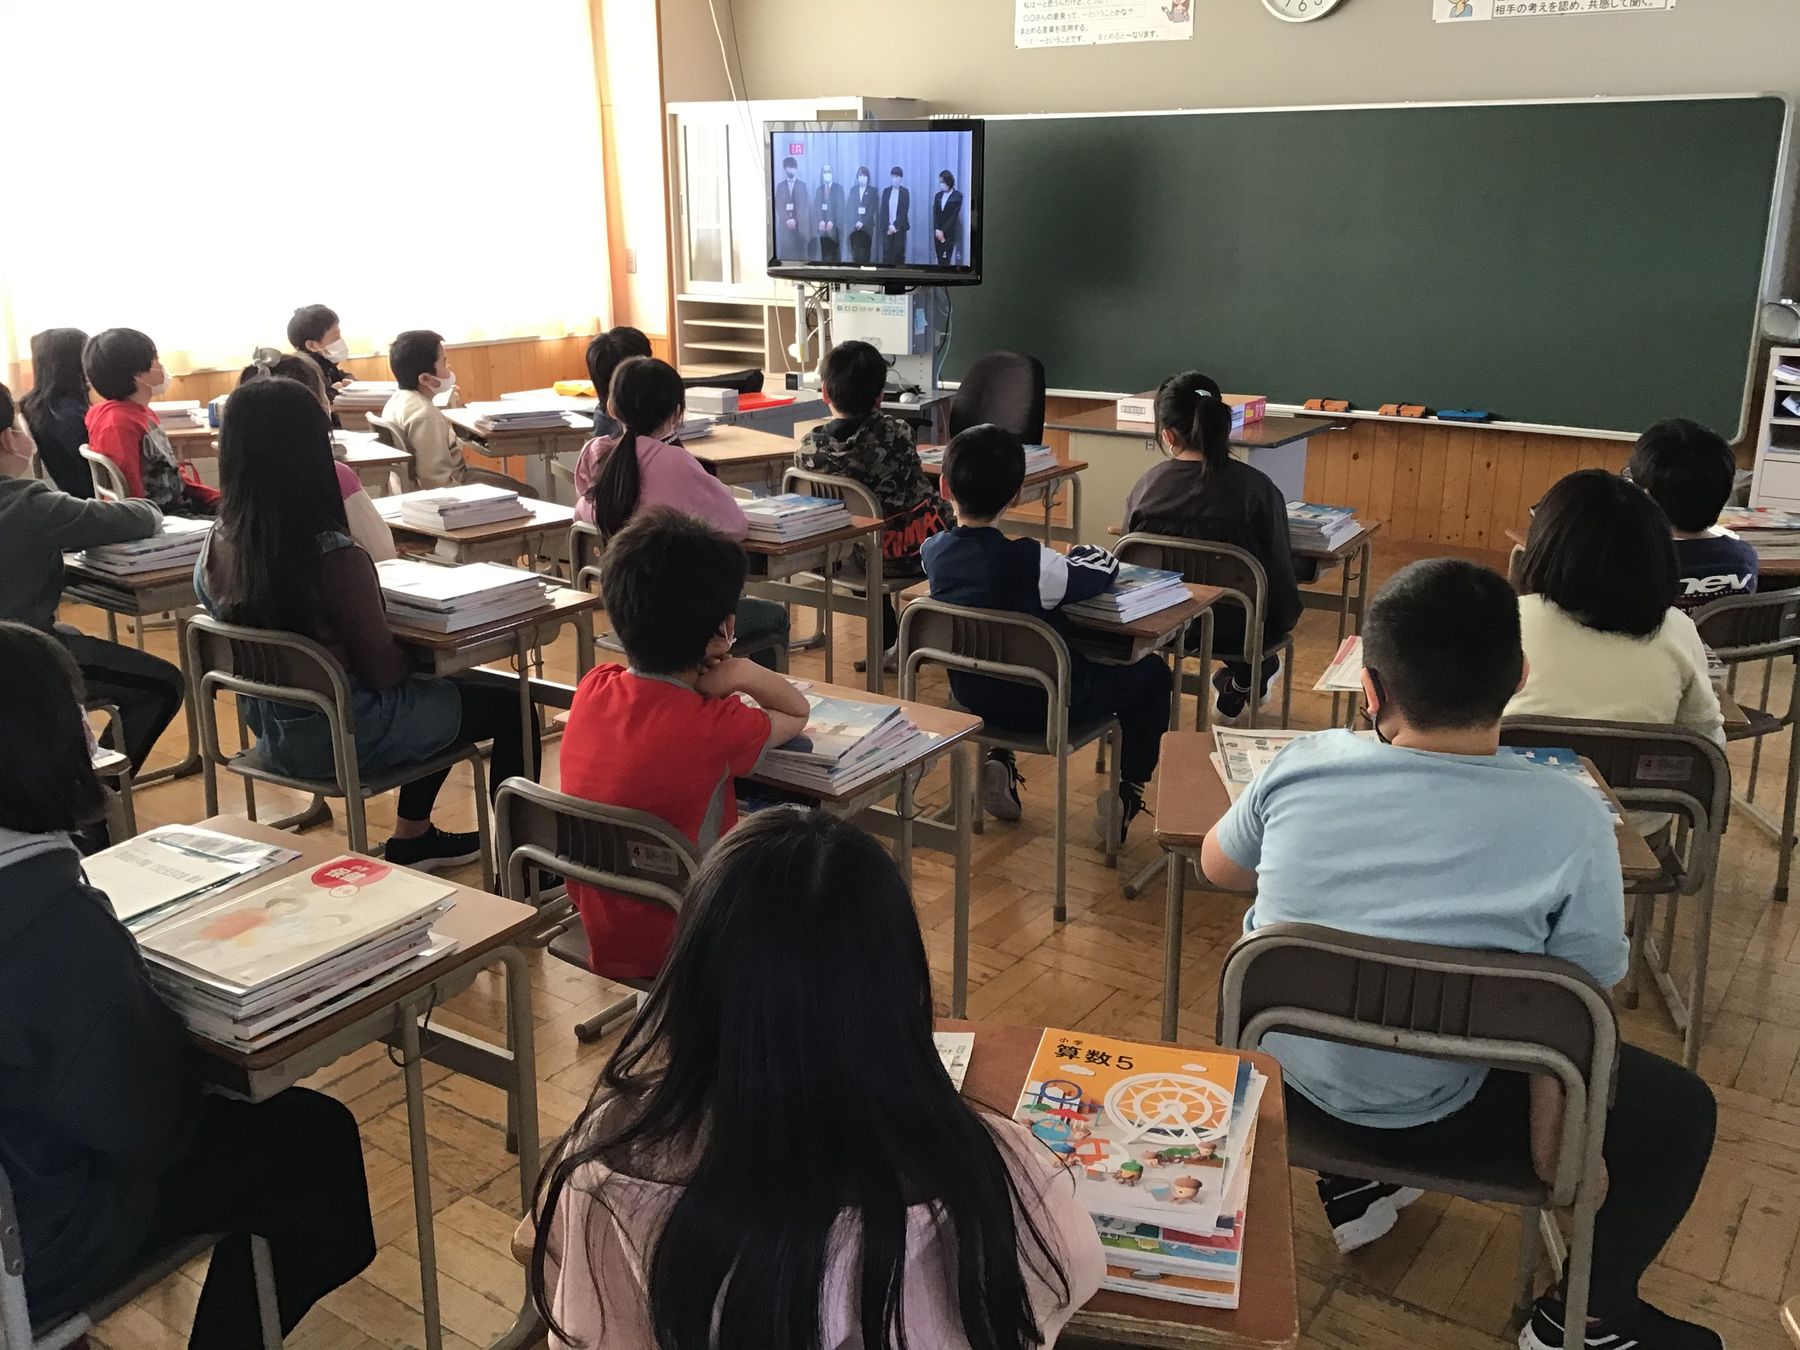 教室内で、教壇横に設置されたテレビを見ている児童達の写真